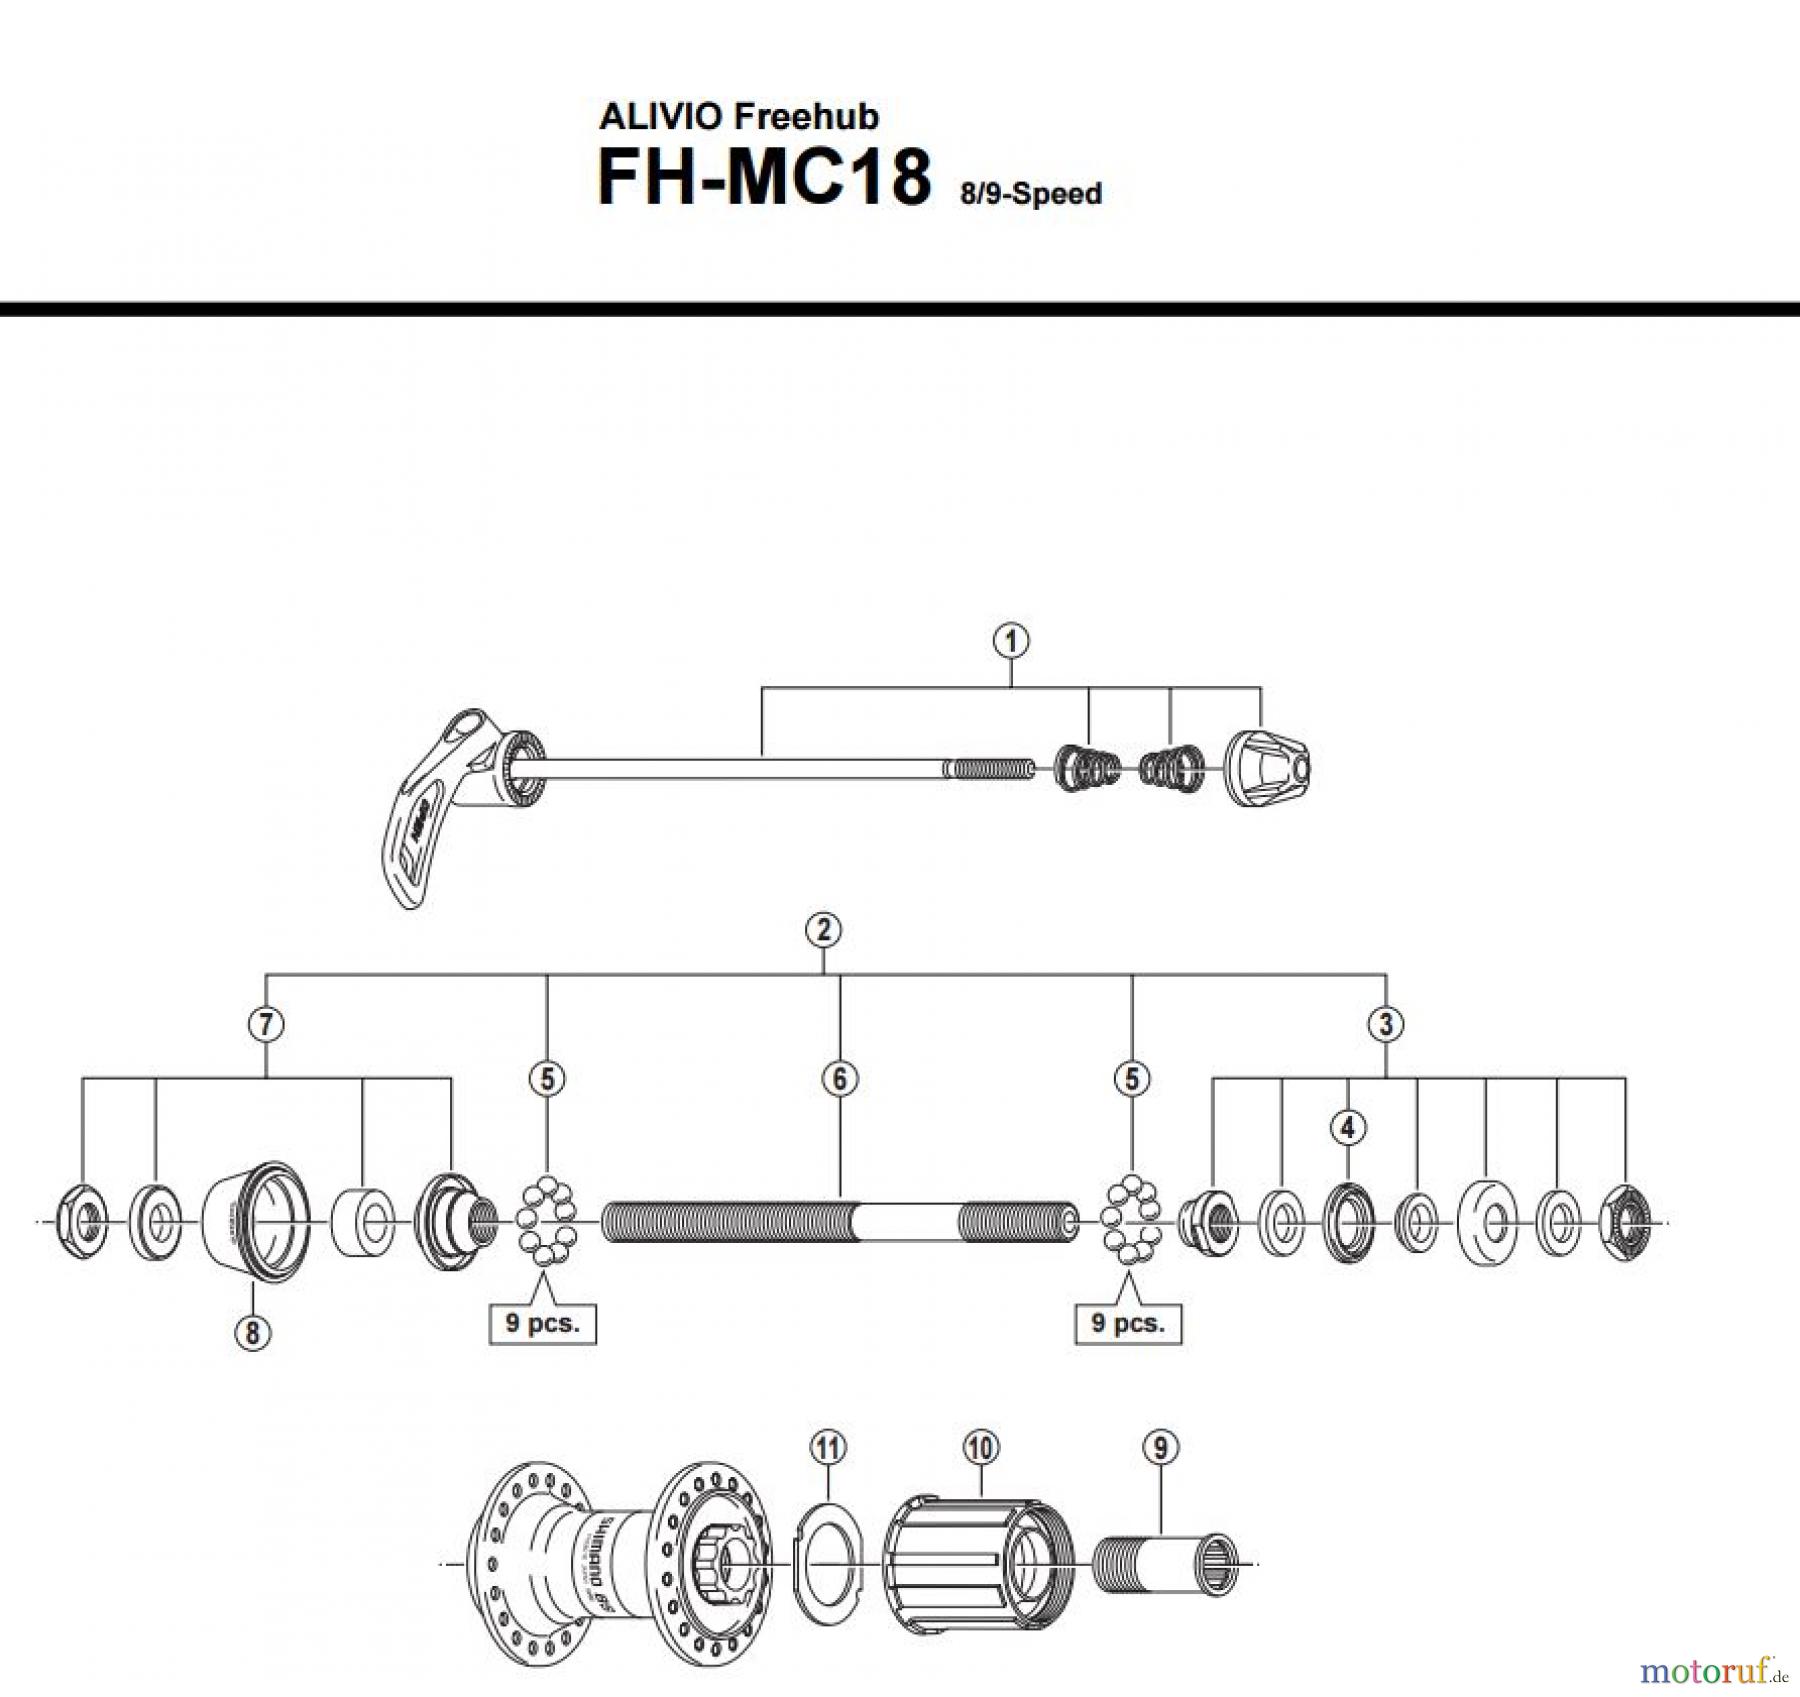  Shimano FH Free Hub - Freilaufnabe FH-MC18 -1749B